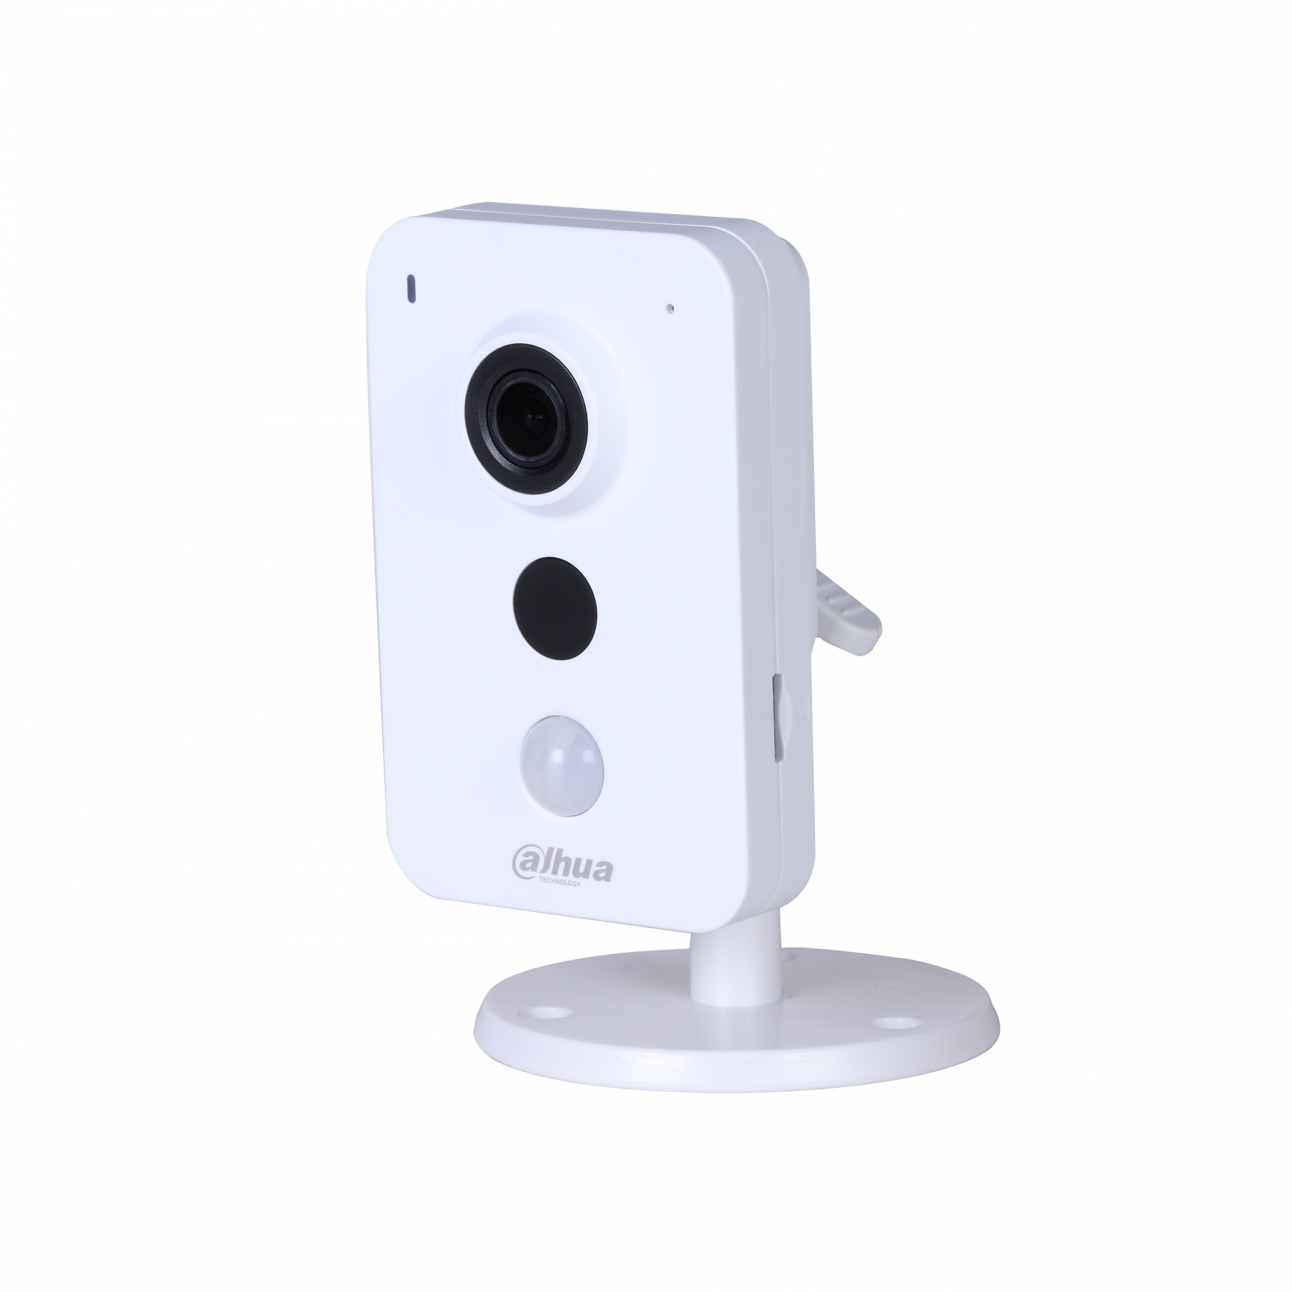 IP камера Dahua DH-IPC-K35AP миникуб 3Мп, объектив 2.8мм, PoE, 12В, microSD, микрофон/динамик, DWDR, ИК до 10м